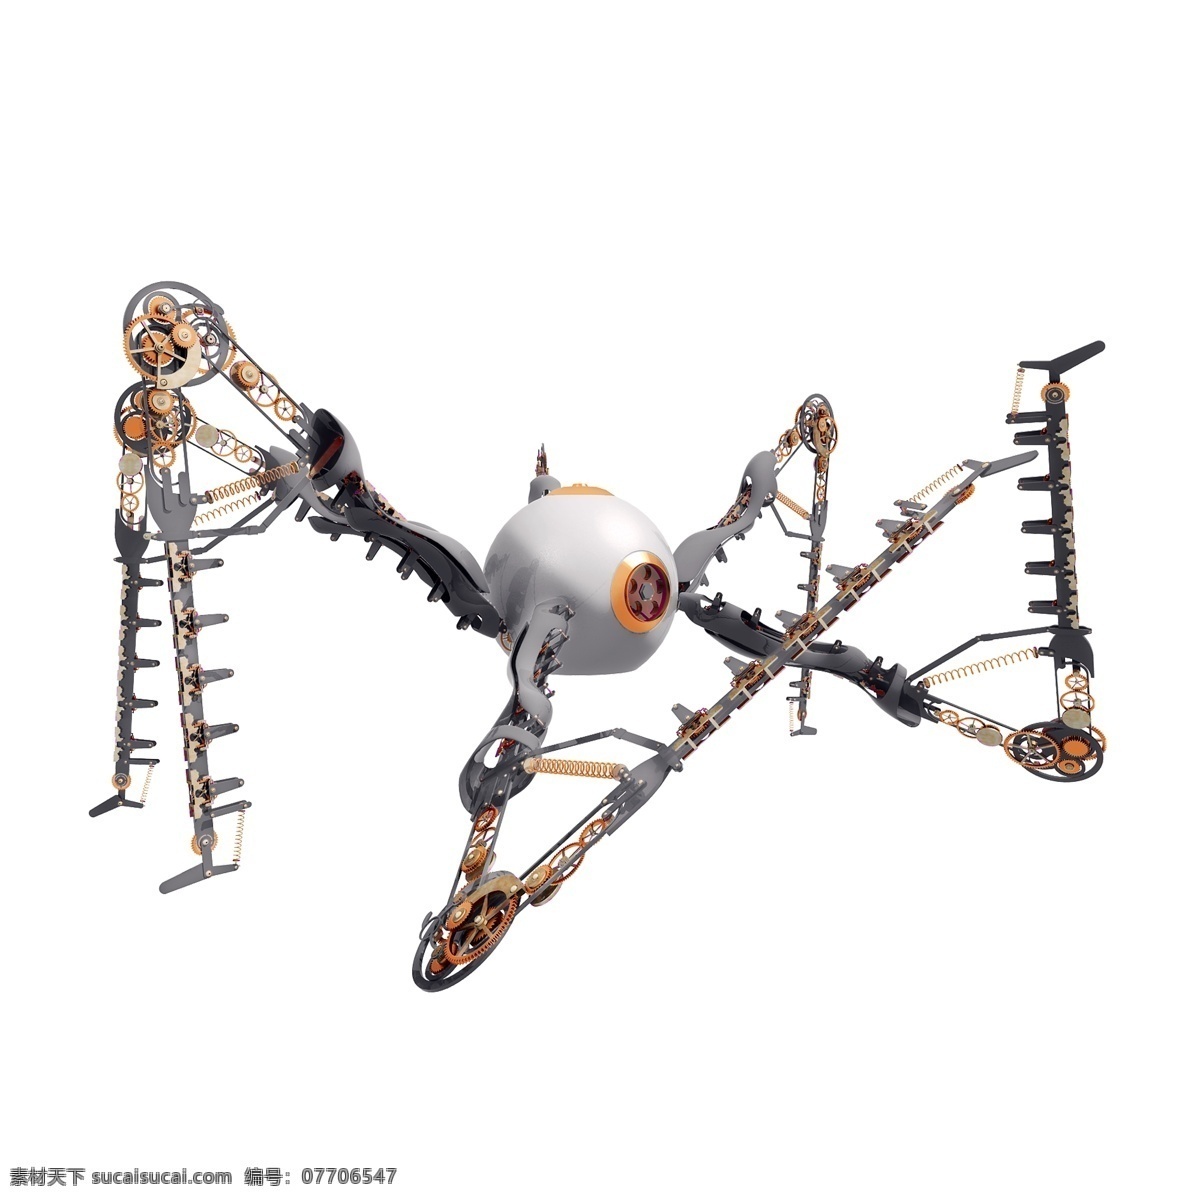 立体 精致 机器人 图 机械 质感 金属 仿真 科幻 蜘蛛 螃蟹 武器 创意 套图 png图